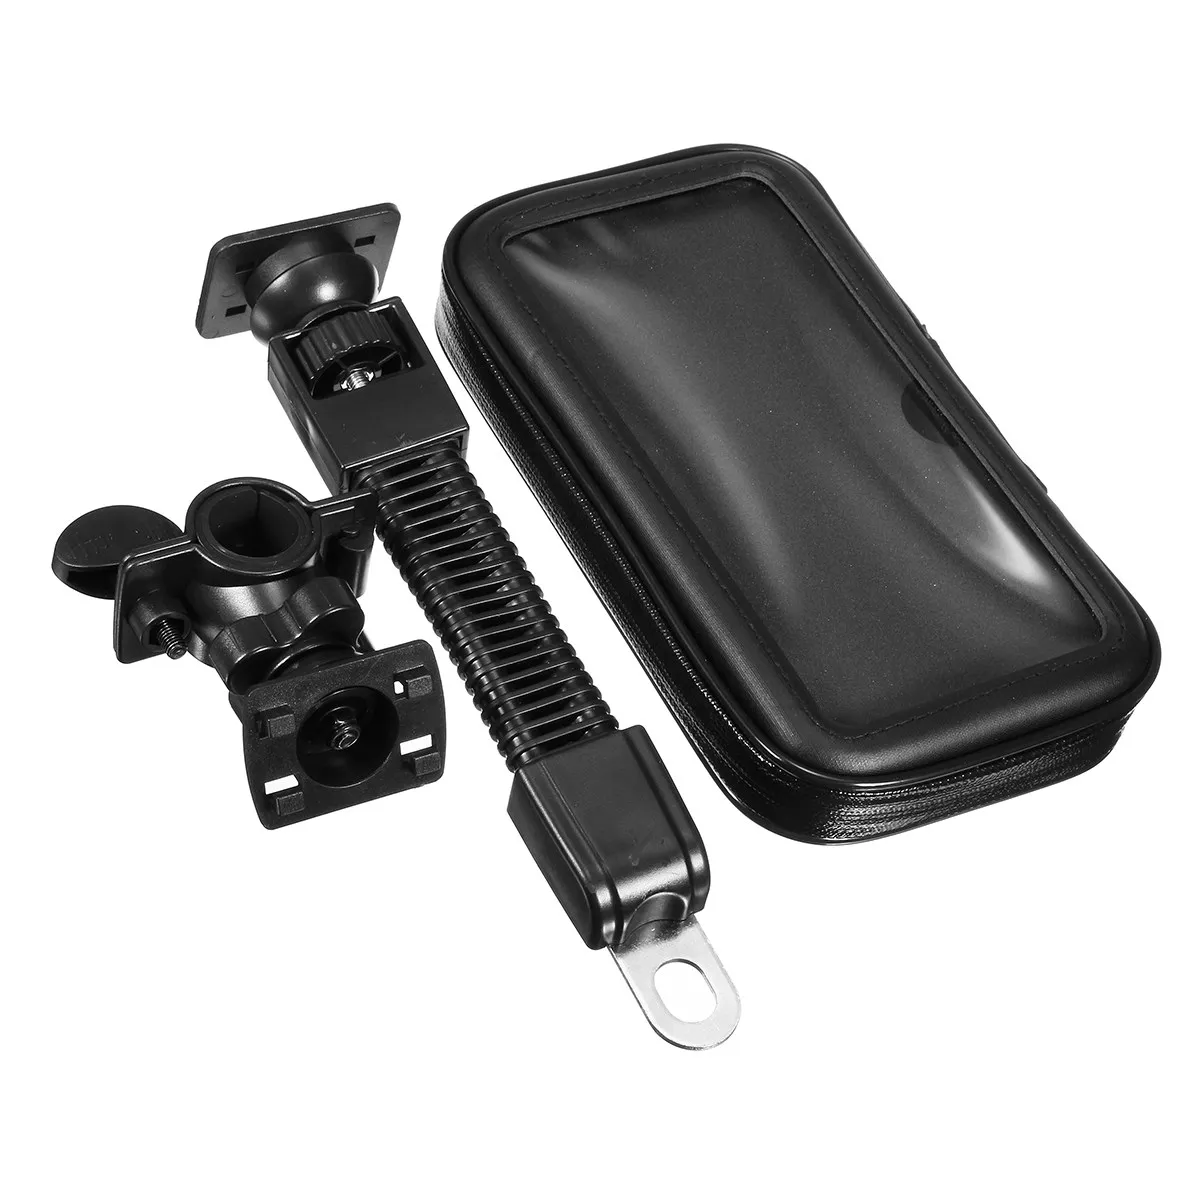 Mofaner 1 комплект, водонепроницаемый держатель для телефона для мотоцикла, скутера, велосипеда, чехол-сумка для мобильного телефона, gps, Univeisal, держатель для телефона, сумки